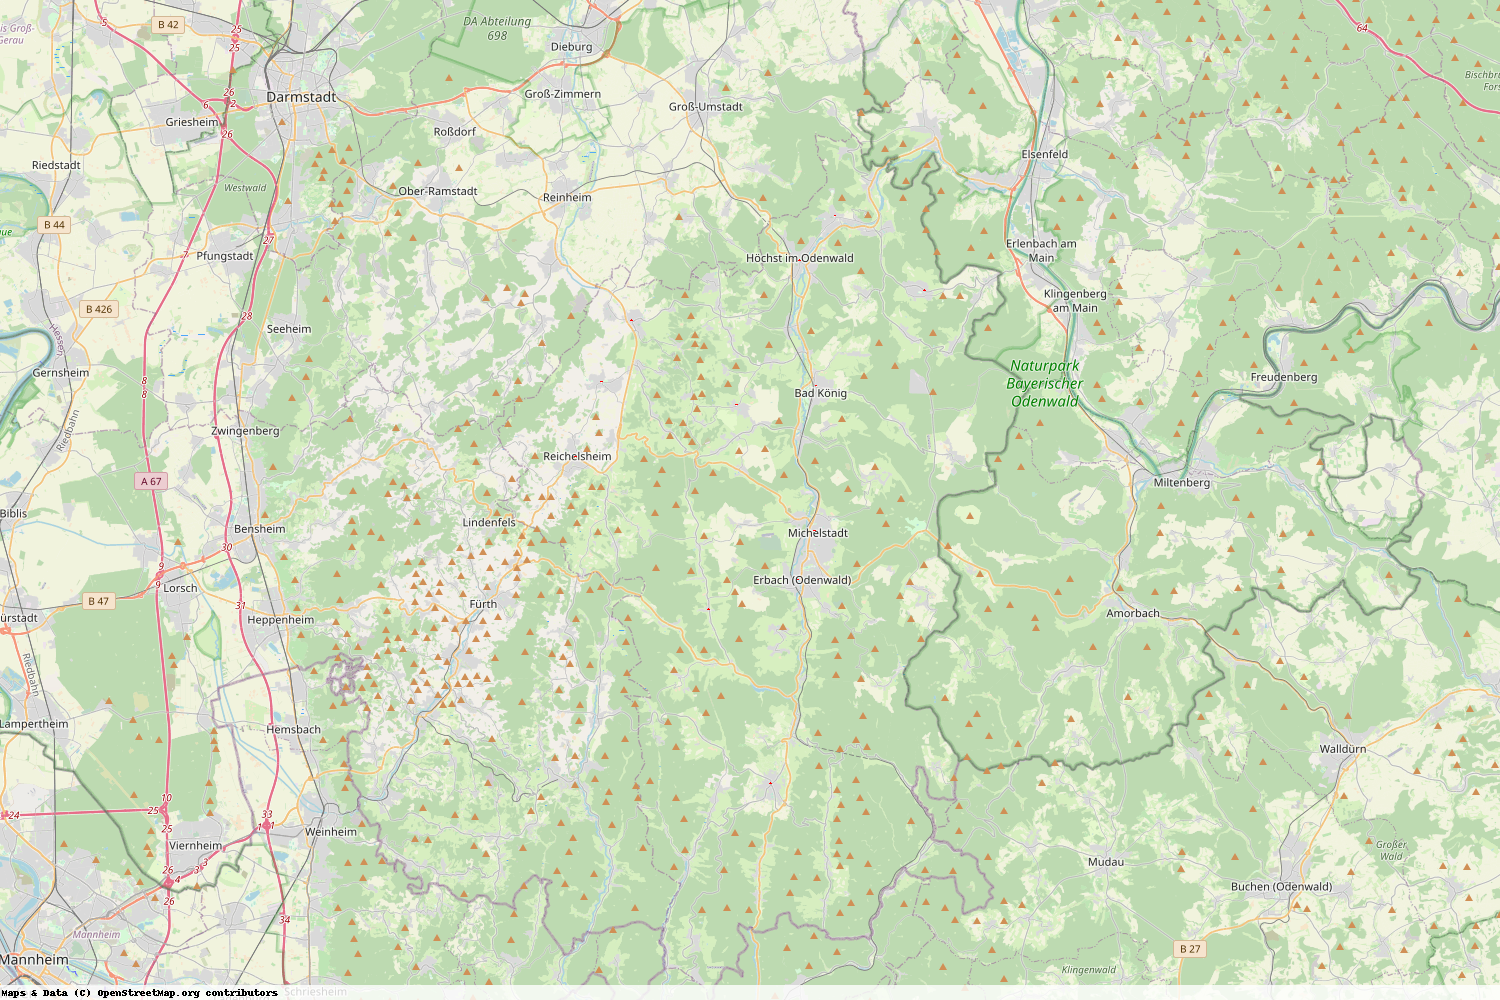 Ist gerade Stromausfall in Hessen - Odenwaldkreis?